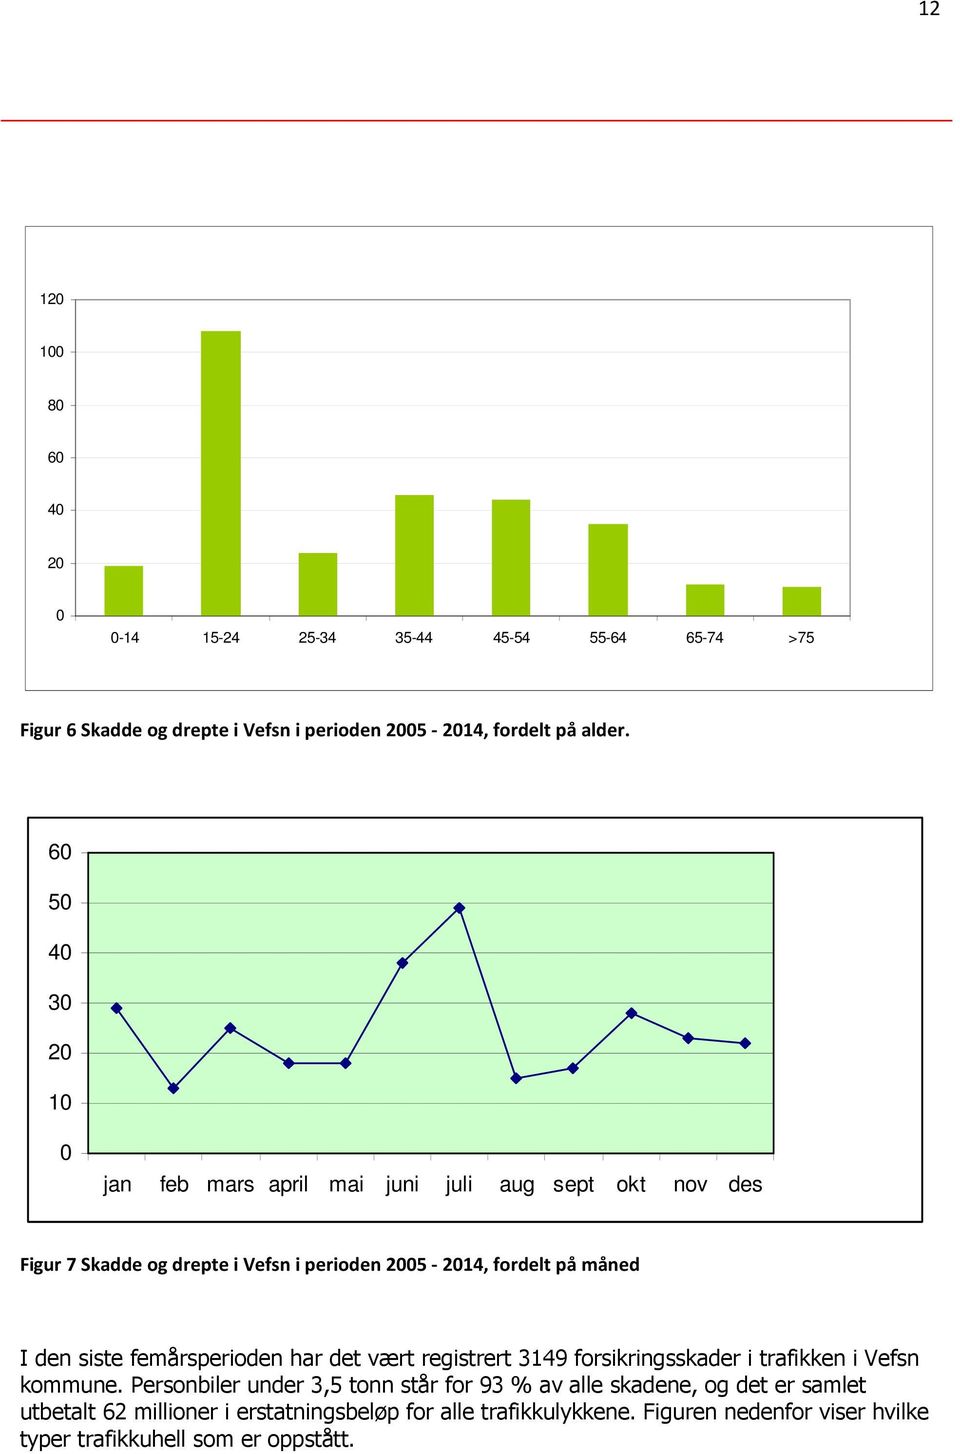 den siste femårsperioden har det vært registrert 3149 forsikringsskader i trafikken i Vefsn kommune.